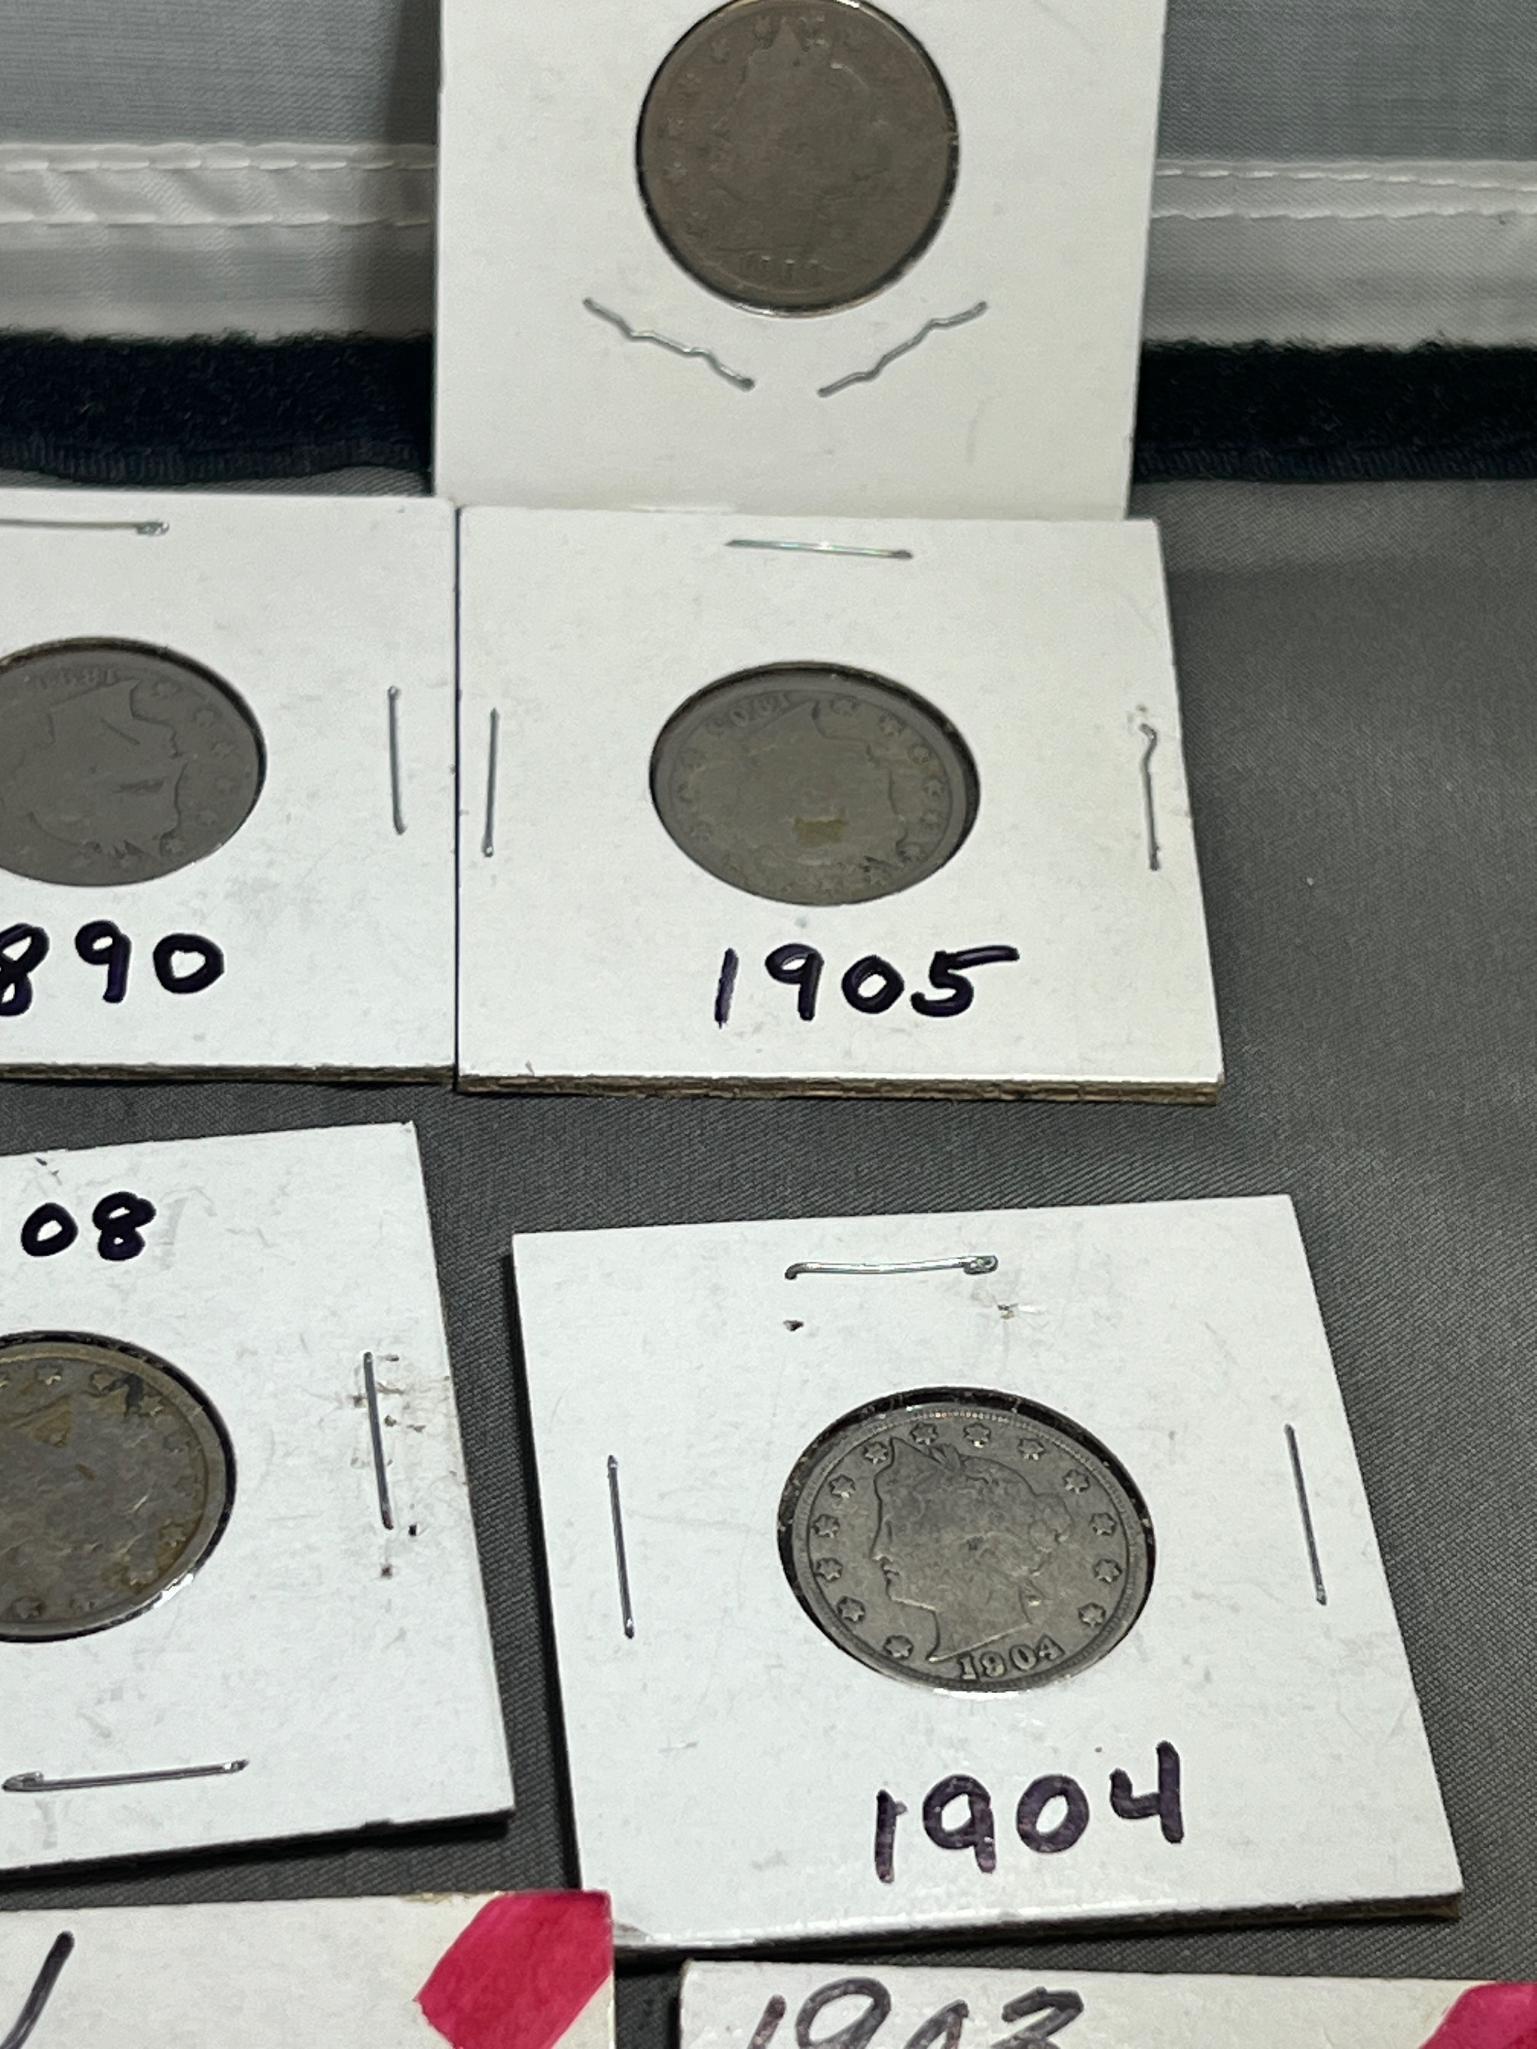 20- Asst. date V Nickels, including semi key 1912-D Nickel